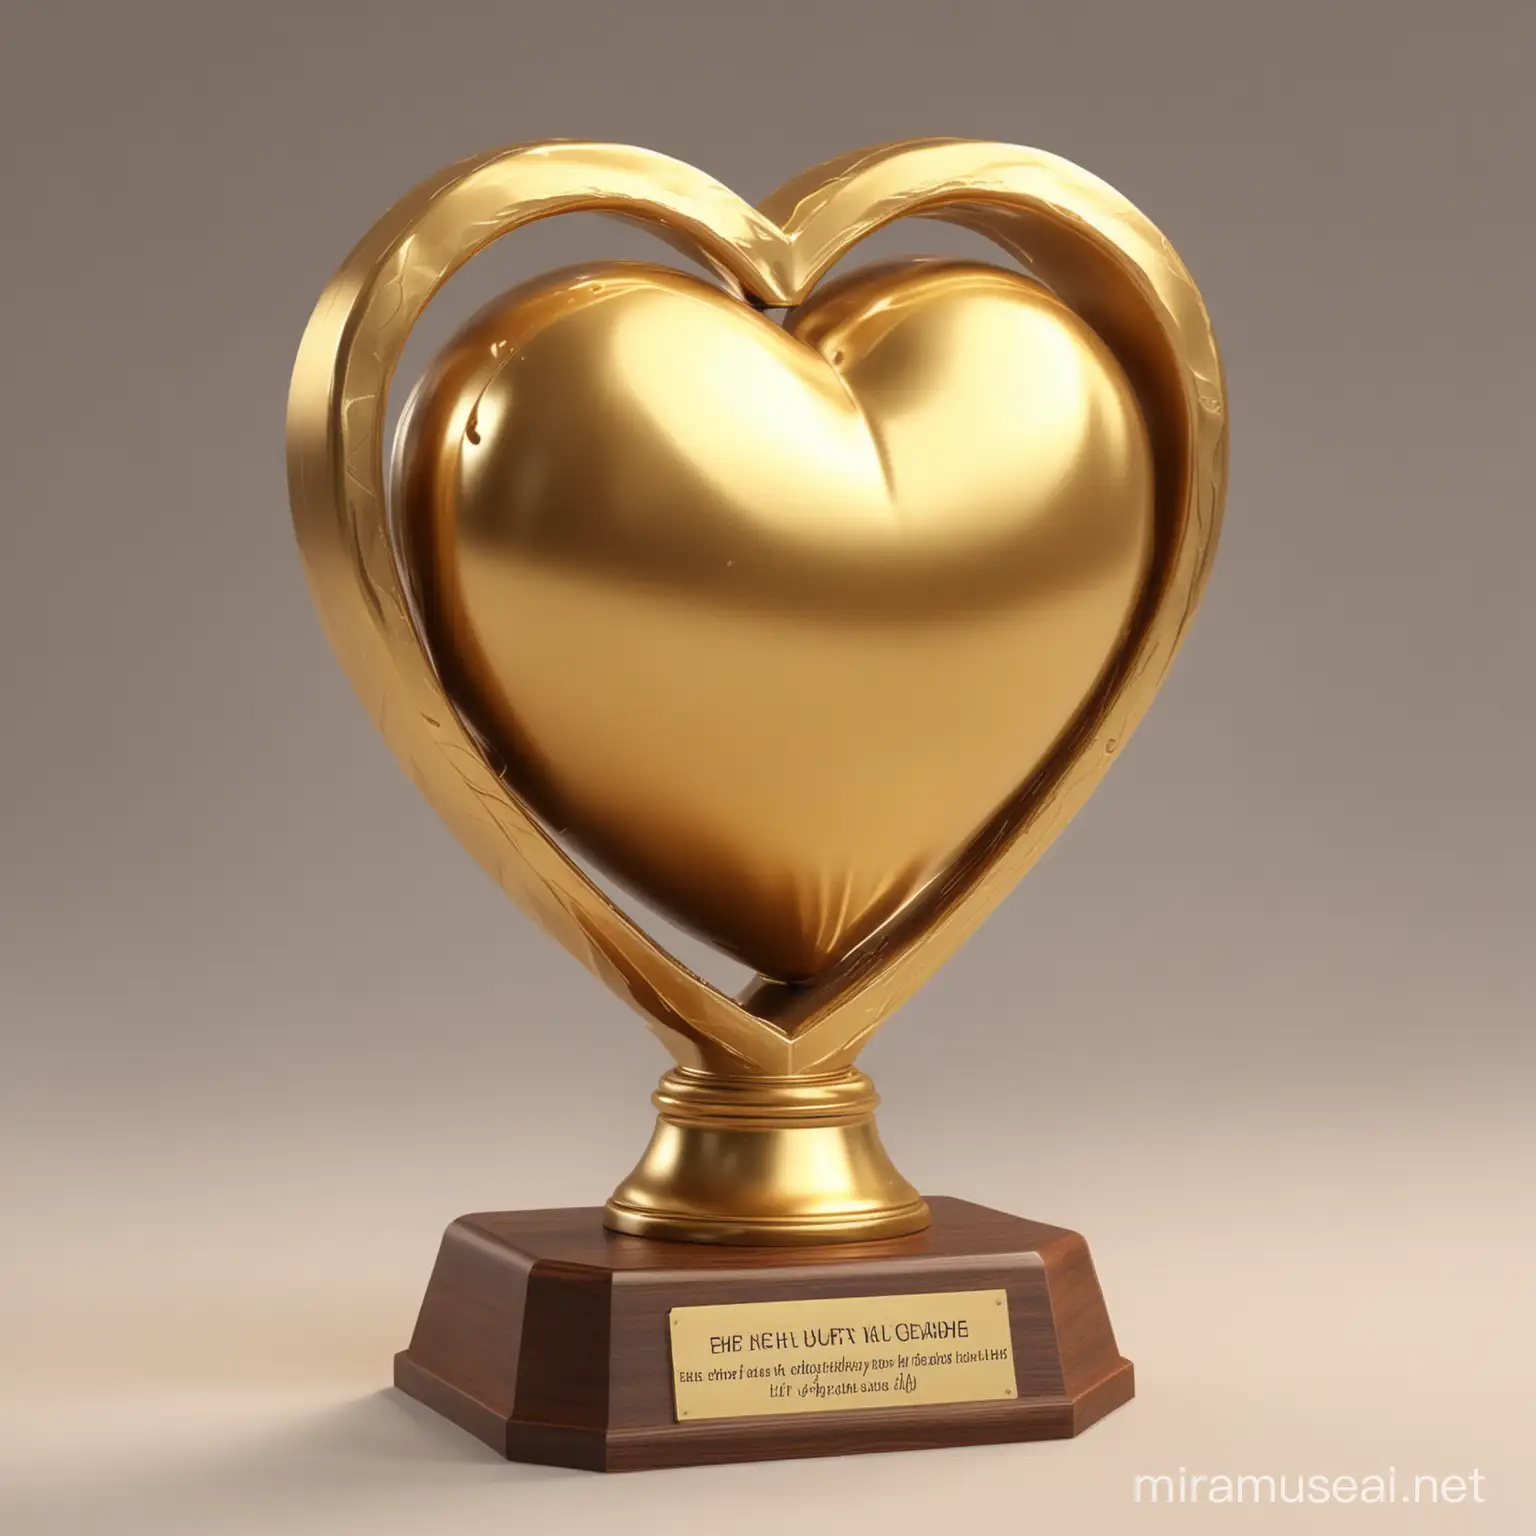 یک تروفی میخوام برام طراحی کنی از یک قلب به شکل باسن به رنگ طلایی و با نمای سه نما